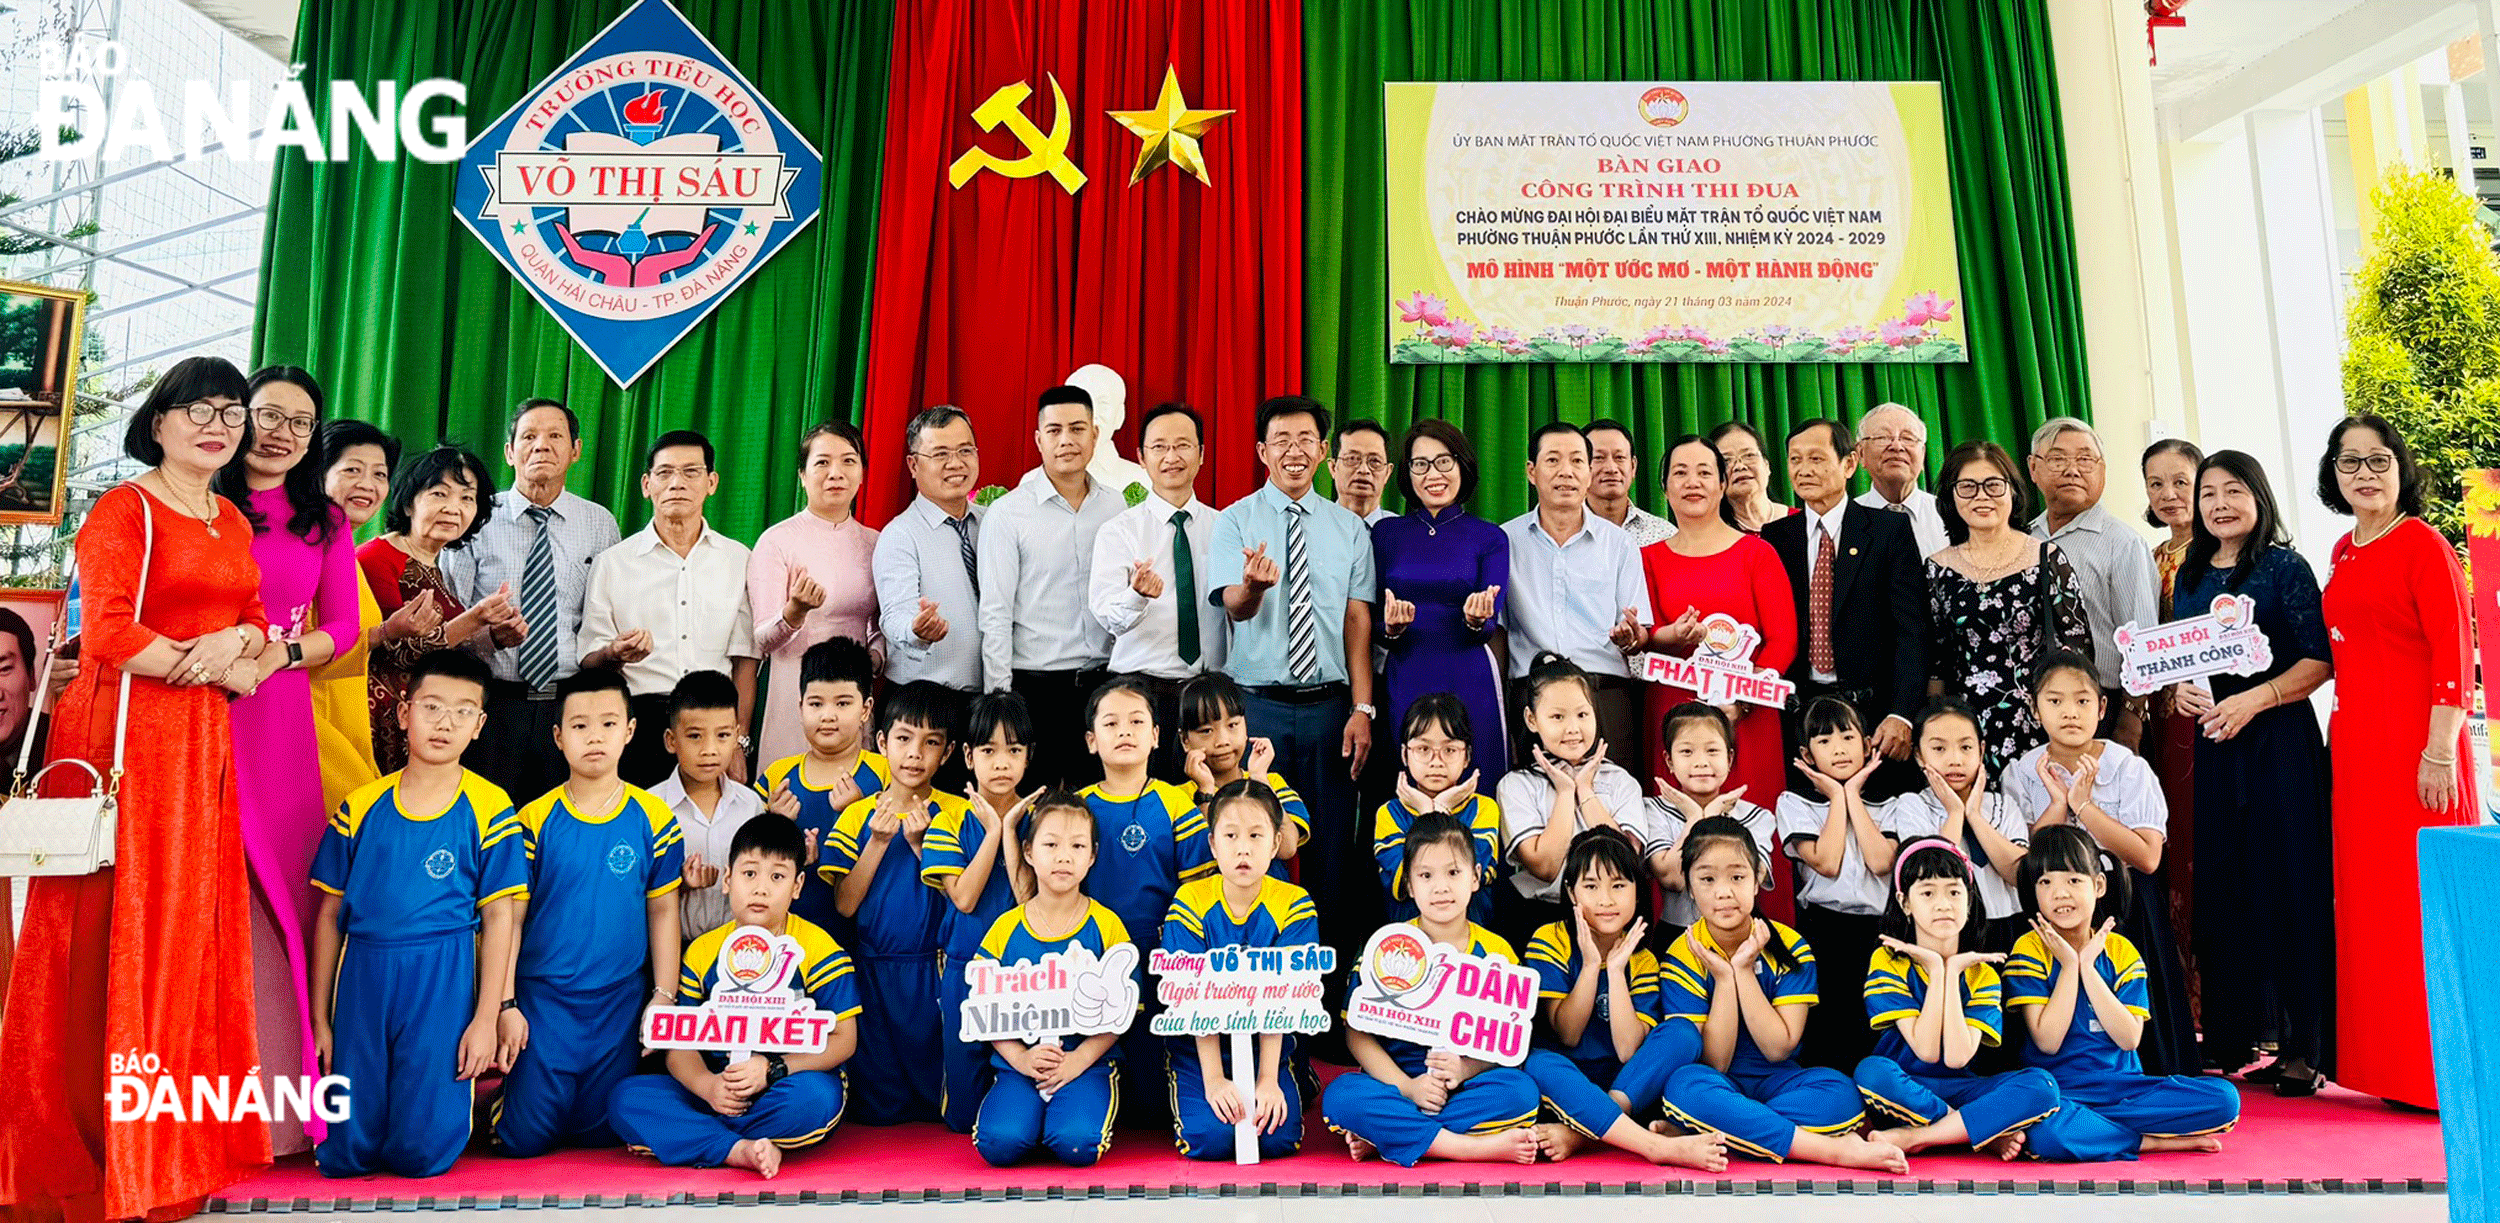 Ủy ban MTTQ Việt Nam phường Thuận Phước tổ chức  Đại hội đại biểu lần thứ XIII, nhiệm kỳ 2024-2029